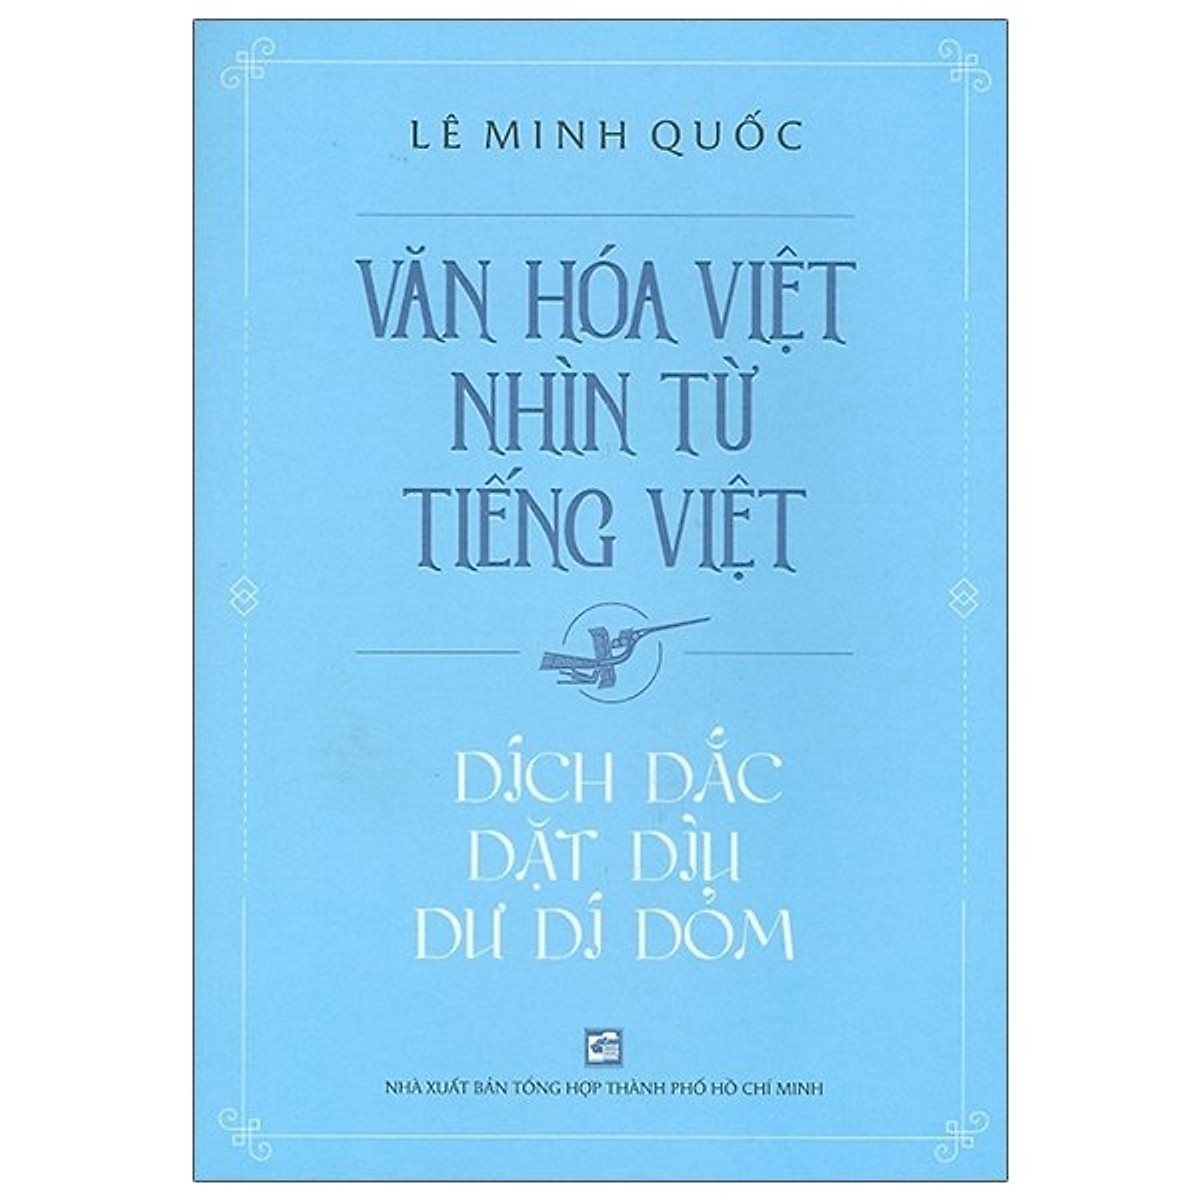 Văn hóa Việt nhìn từ tiếng Việt - Dích dắc dặt dìu dư dí dỏm